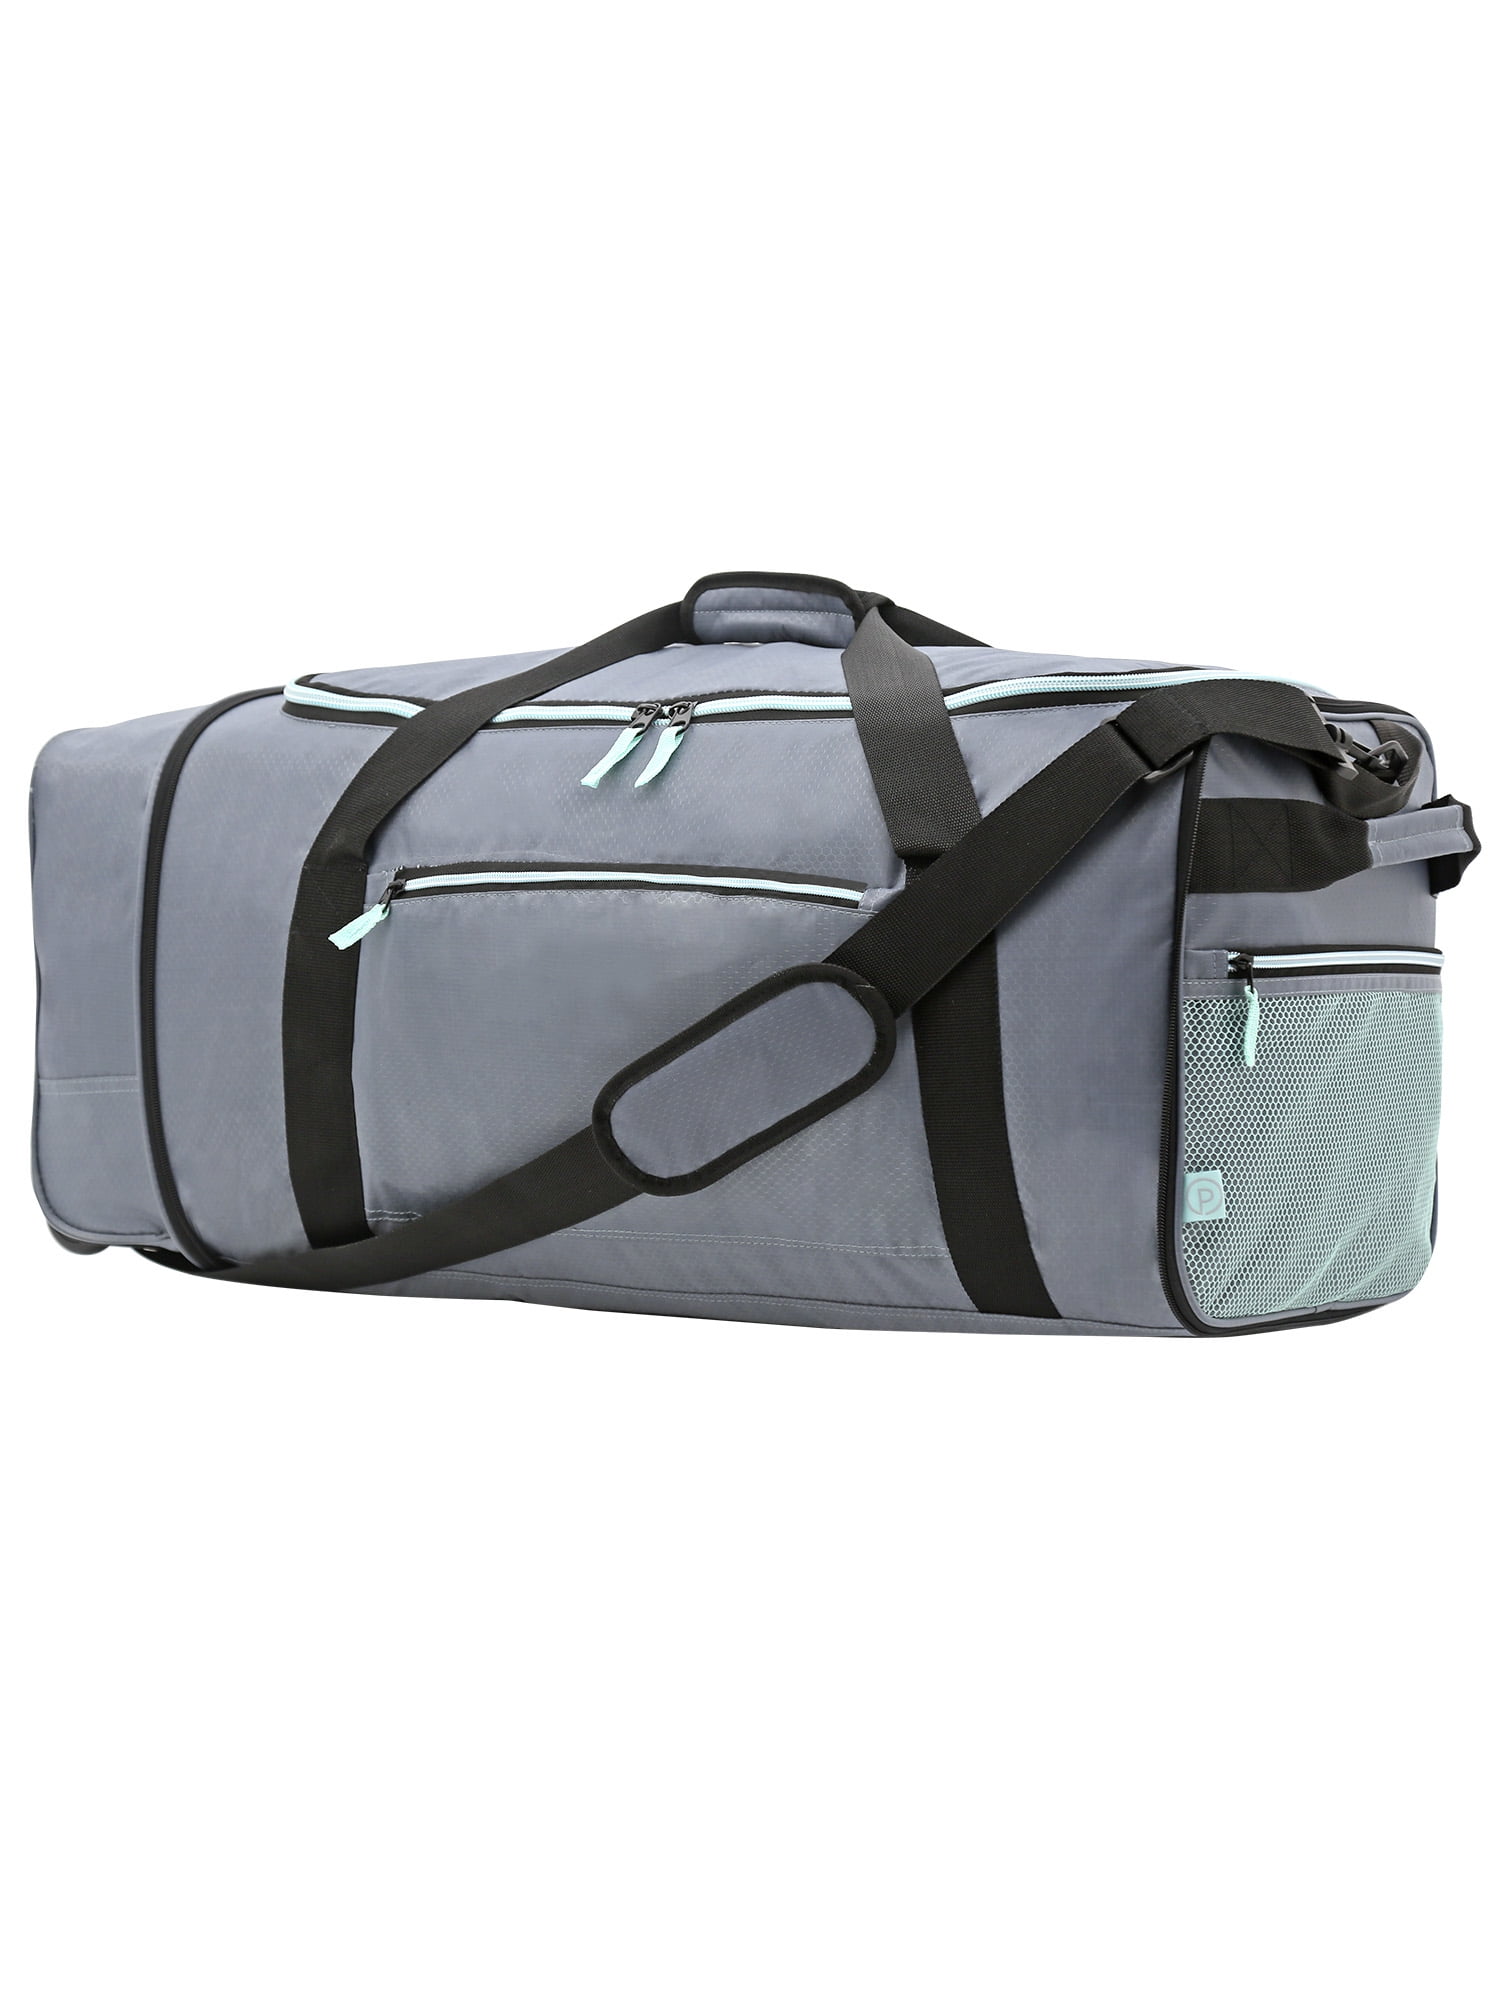 Travel Bags - Designer Travel Bags for Women | Béis Travel